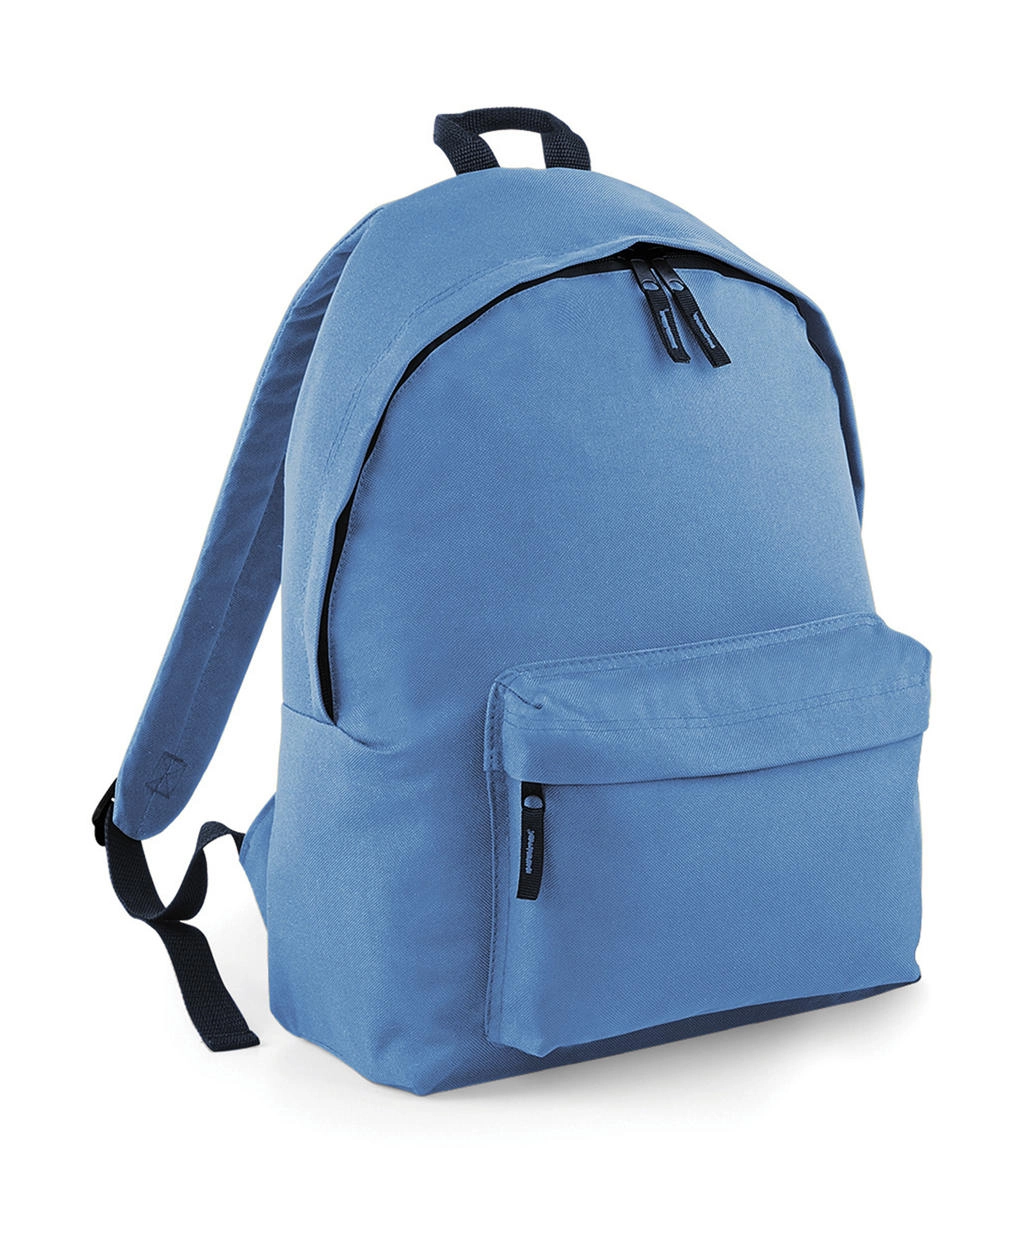 Original Fashion Backpack zum Besticken und Bedrucken in der Farbe Sky Blue/French Navy mit Ihren Logo, Schriftzug oder Motiv.